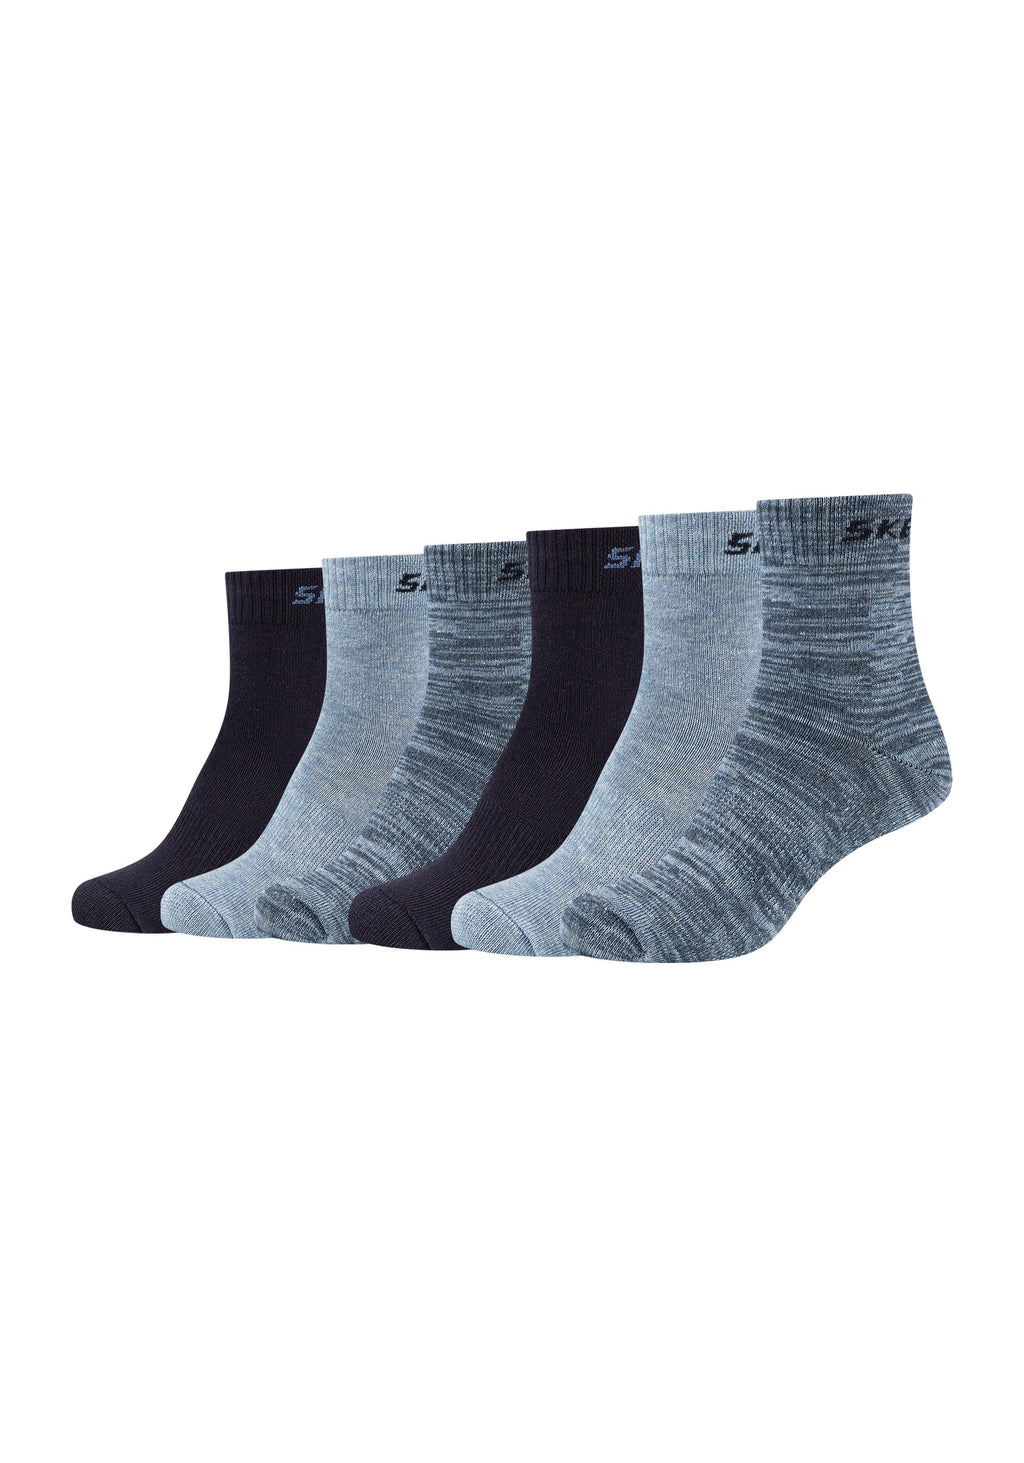 Mesh Ventilation Pack – 6er ONSKINERY Socken Kinder